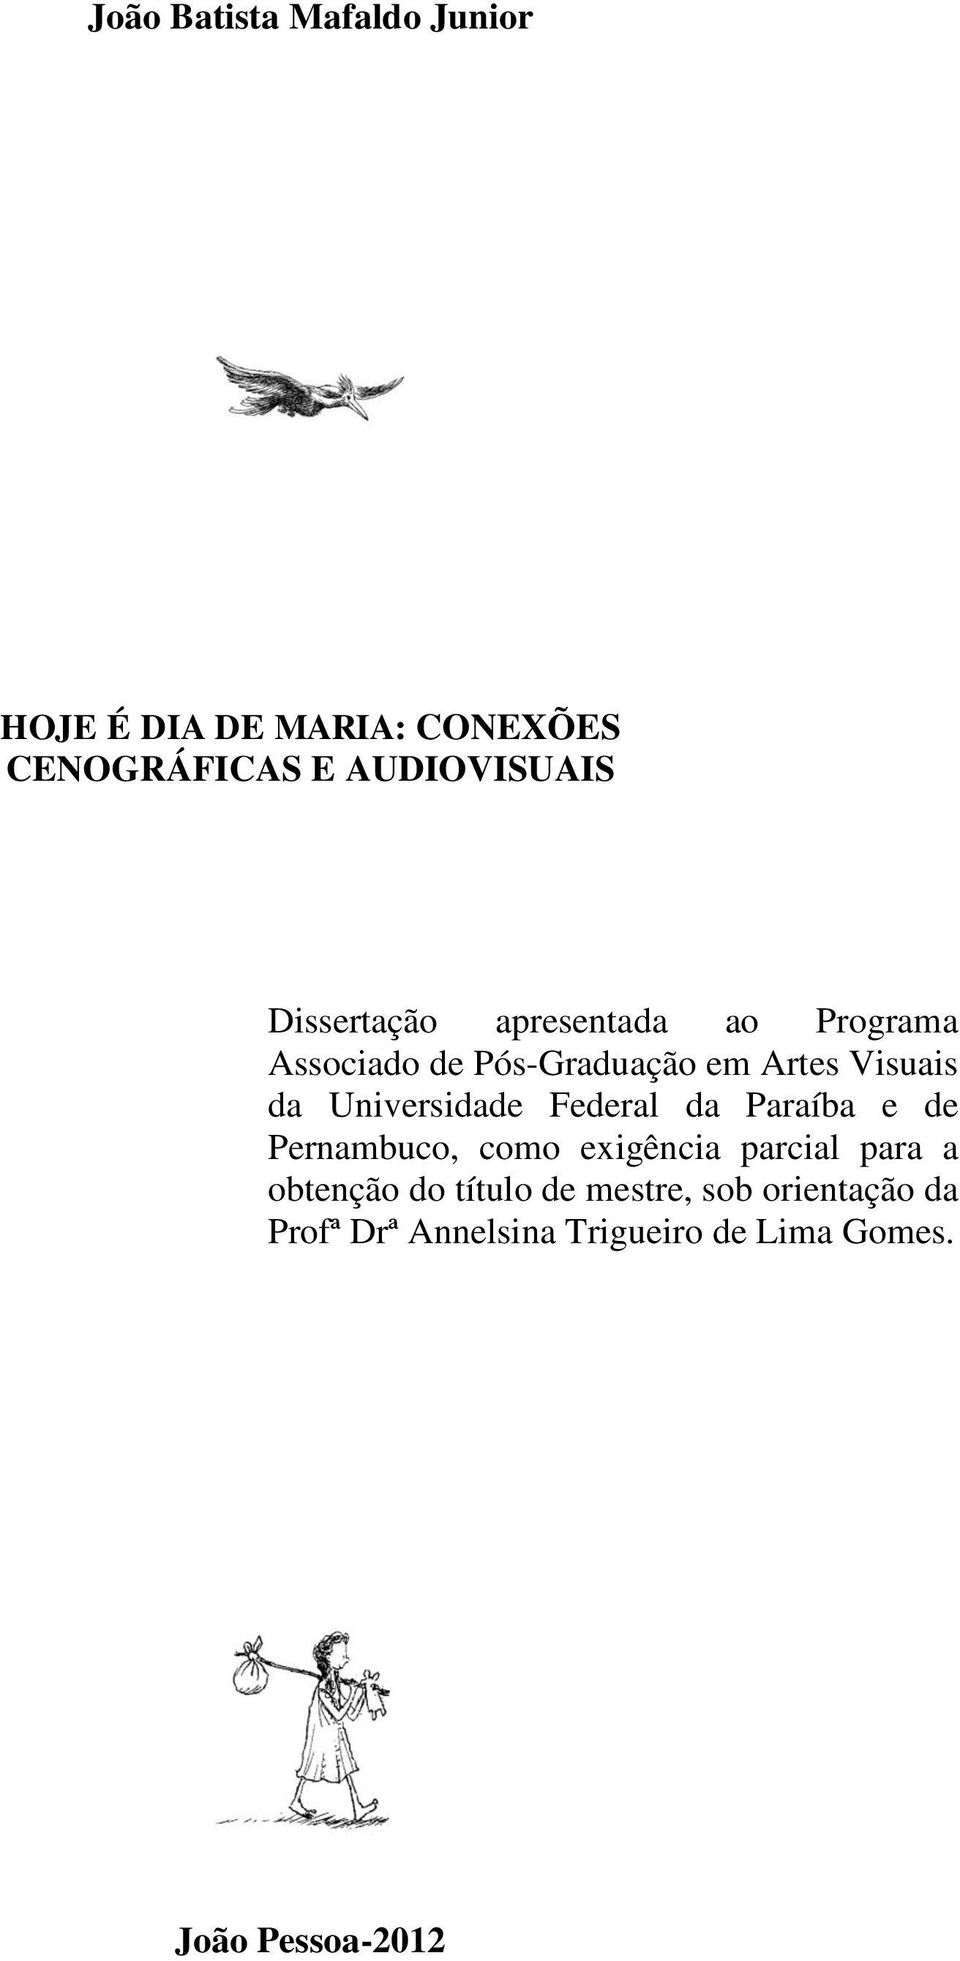 Universidade Federal da Paraíba e de Pernambuco, como exigência parcial para a obtenção